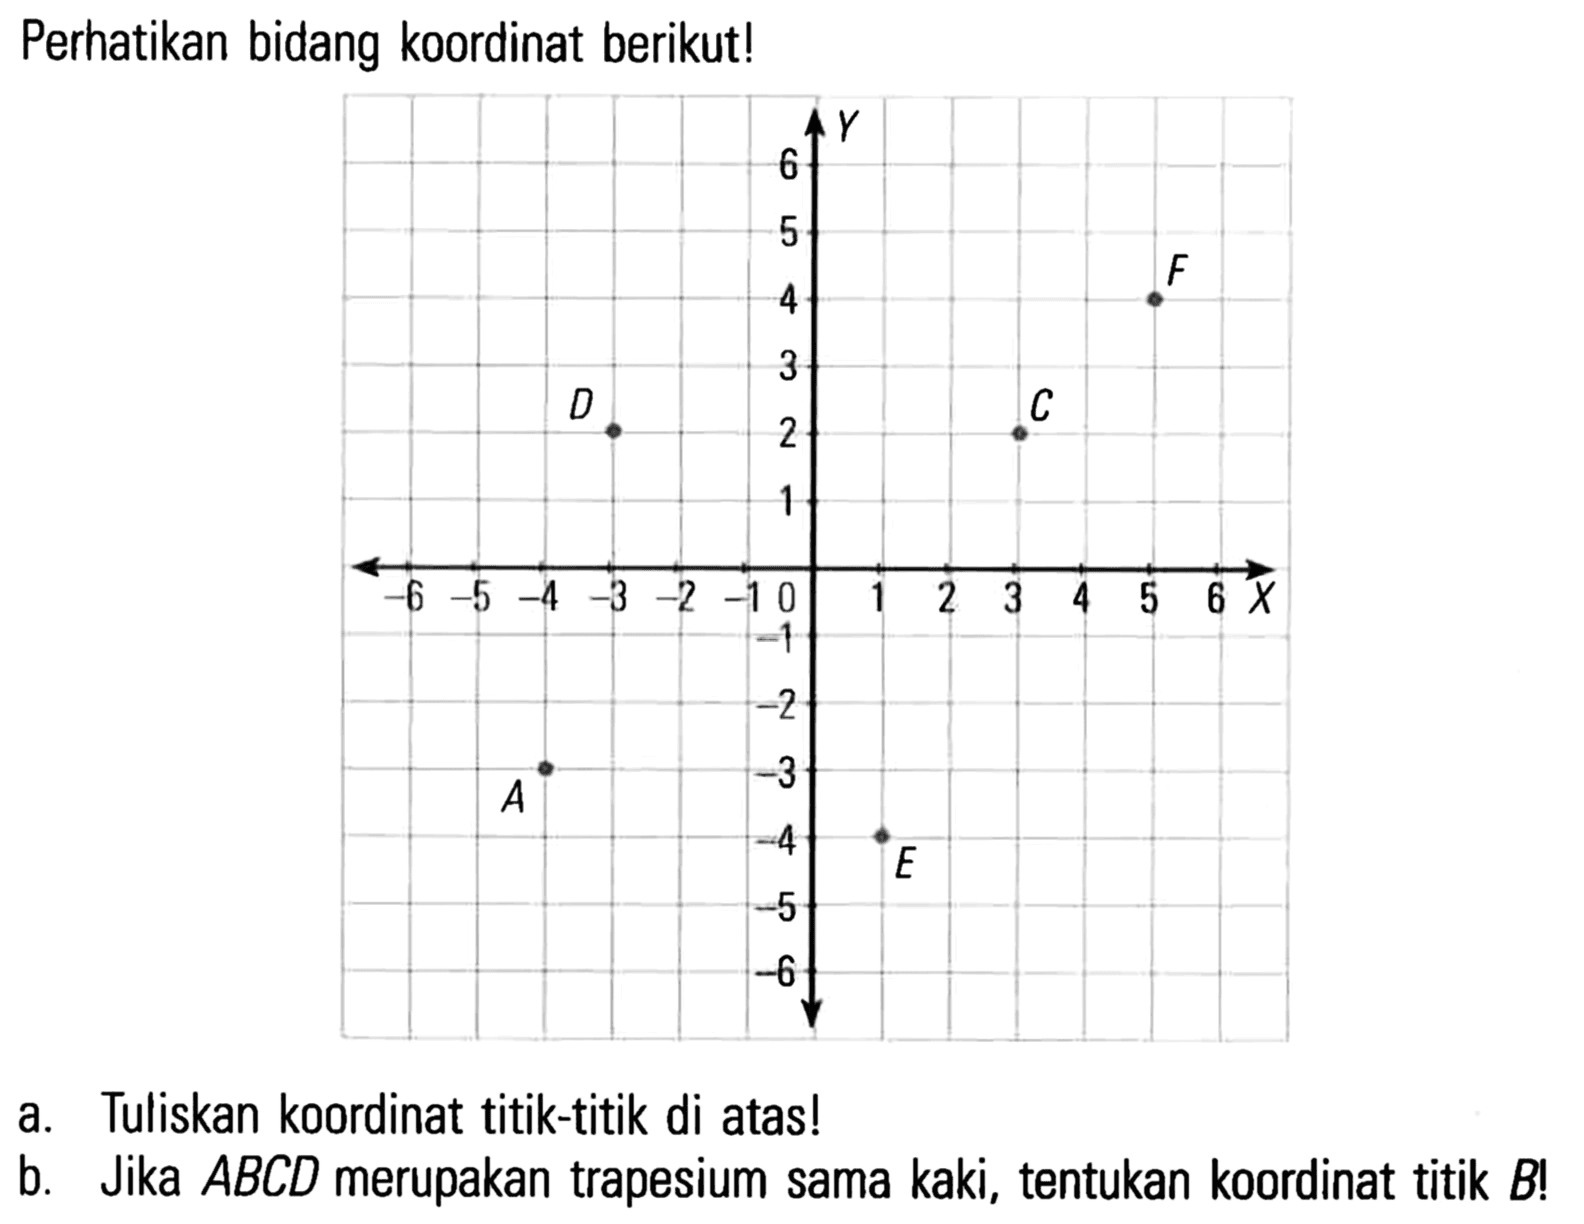 Perhatikan bidang koordinat berikut! Y 6 5 4 F 3 G 2 C 1 -6 -5 -4 -3 -2 -1 0 1 2 3 4 5 6 X -1 -2 A -3 -4 E -5 -6 a. Tuliskan koordinat titik-titik di atas! b. Jika ABCD merupakan trapesium sama kaki, tentukan koordinat titik B!